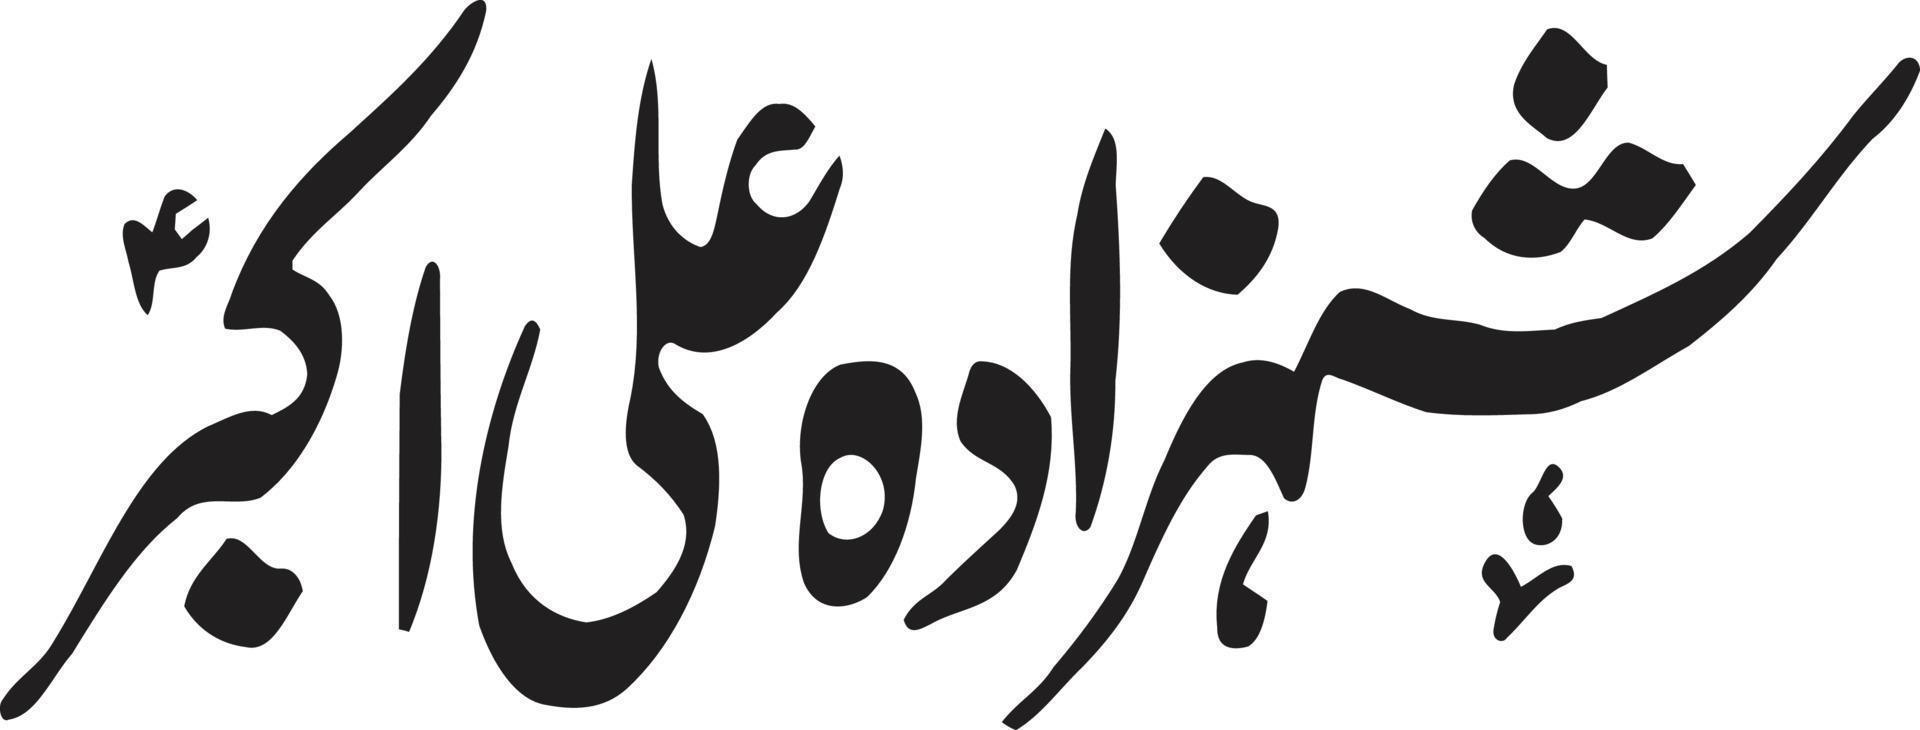 shazada ali akber título islámico urdu árabe caligrafía vector libre